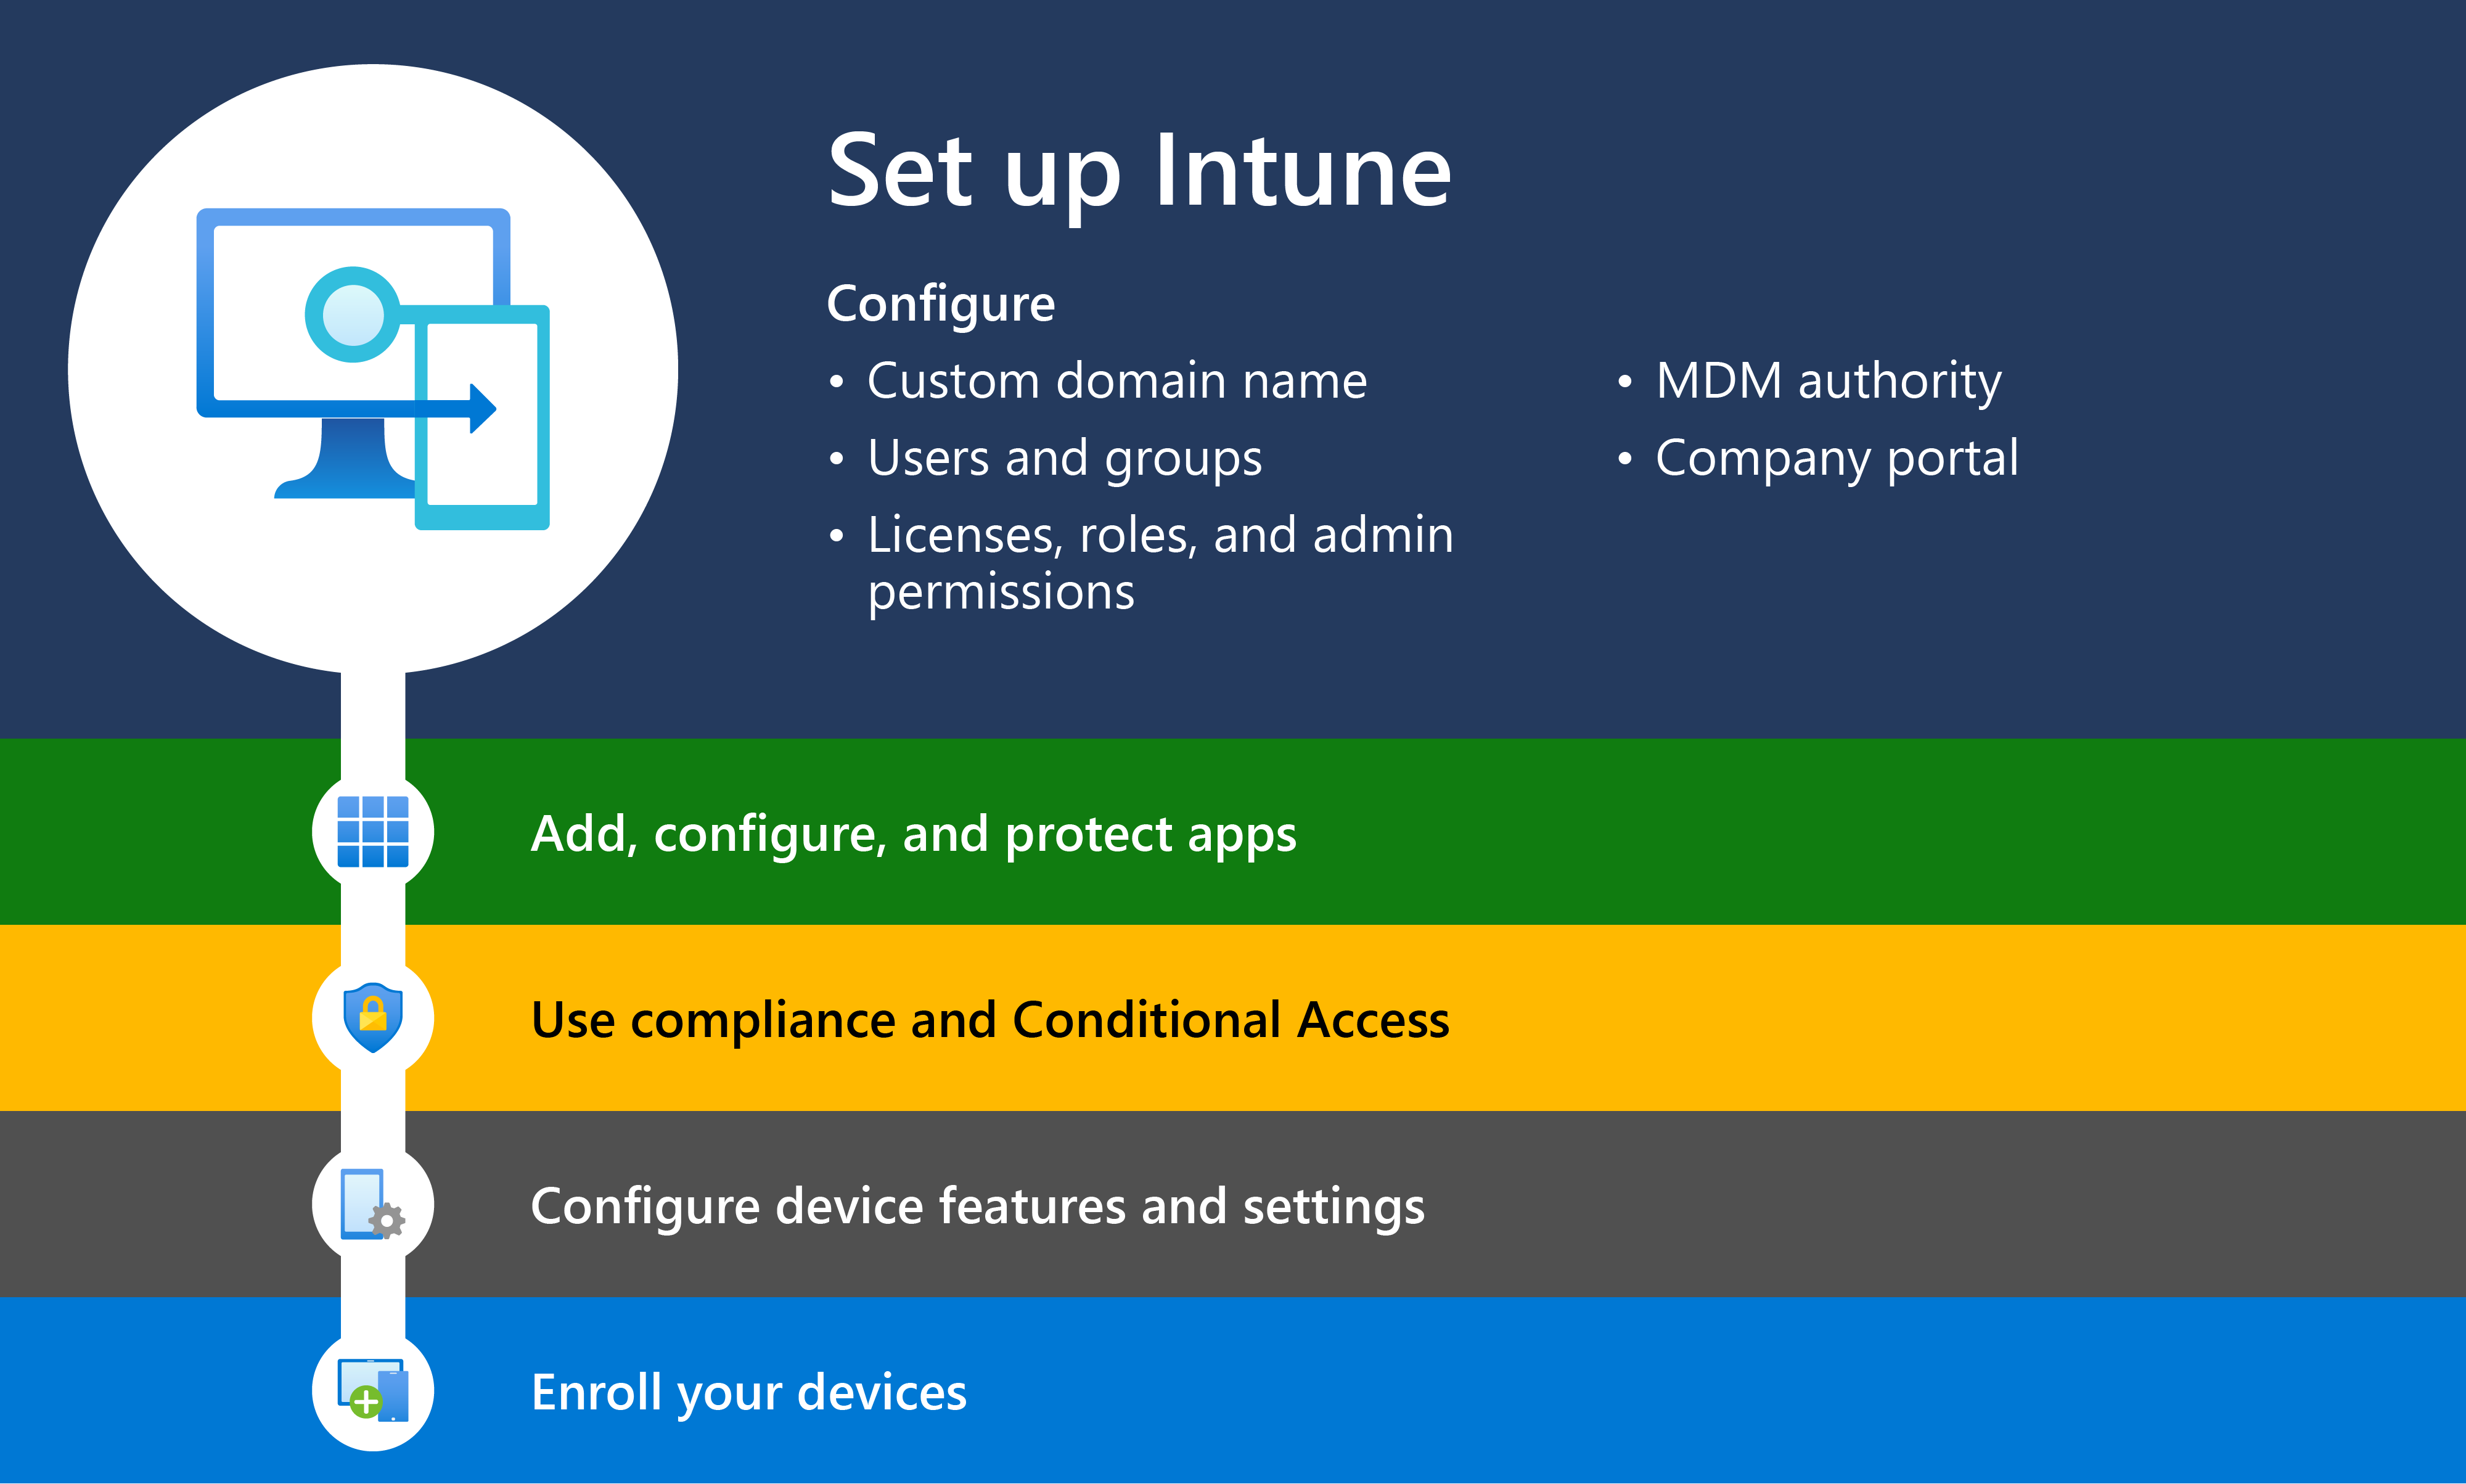 Az Intune használatának első lépéseit bemutató ábra az 1. lépéssel, amely a Microsoft Intune beállítását mutatja be.